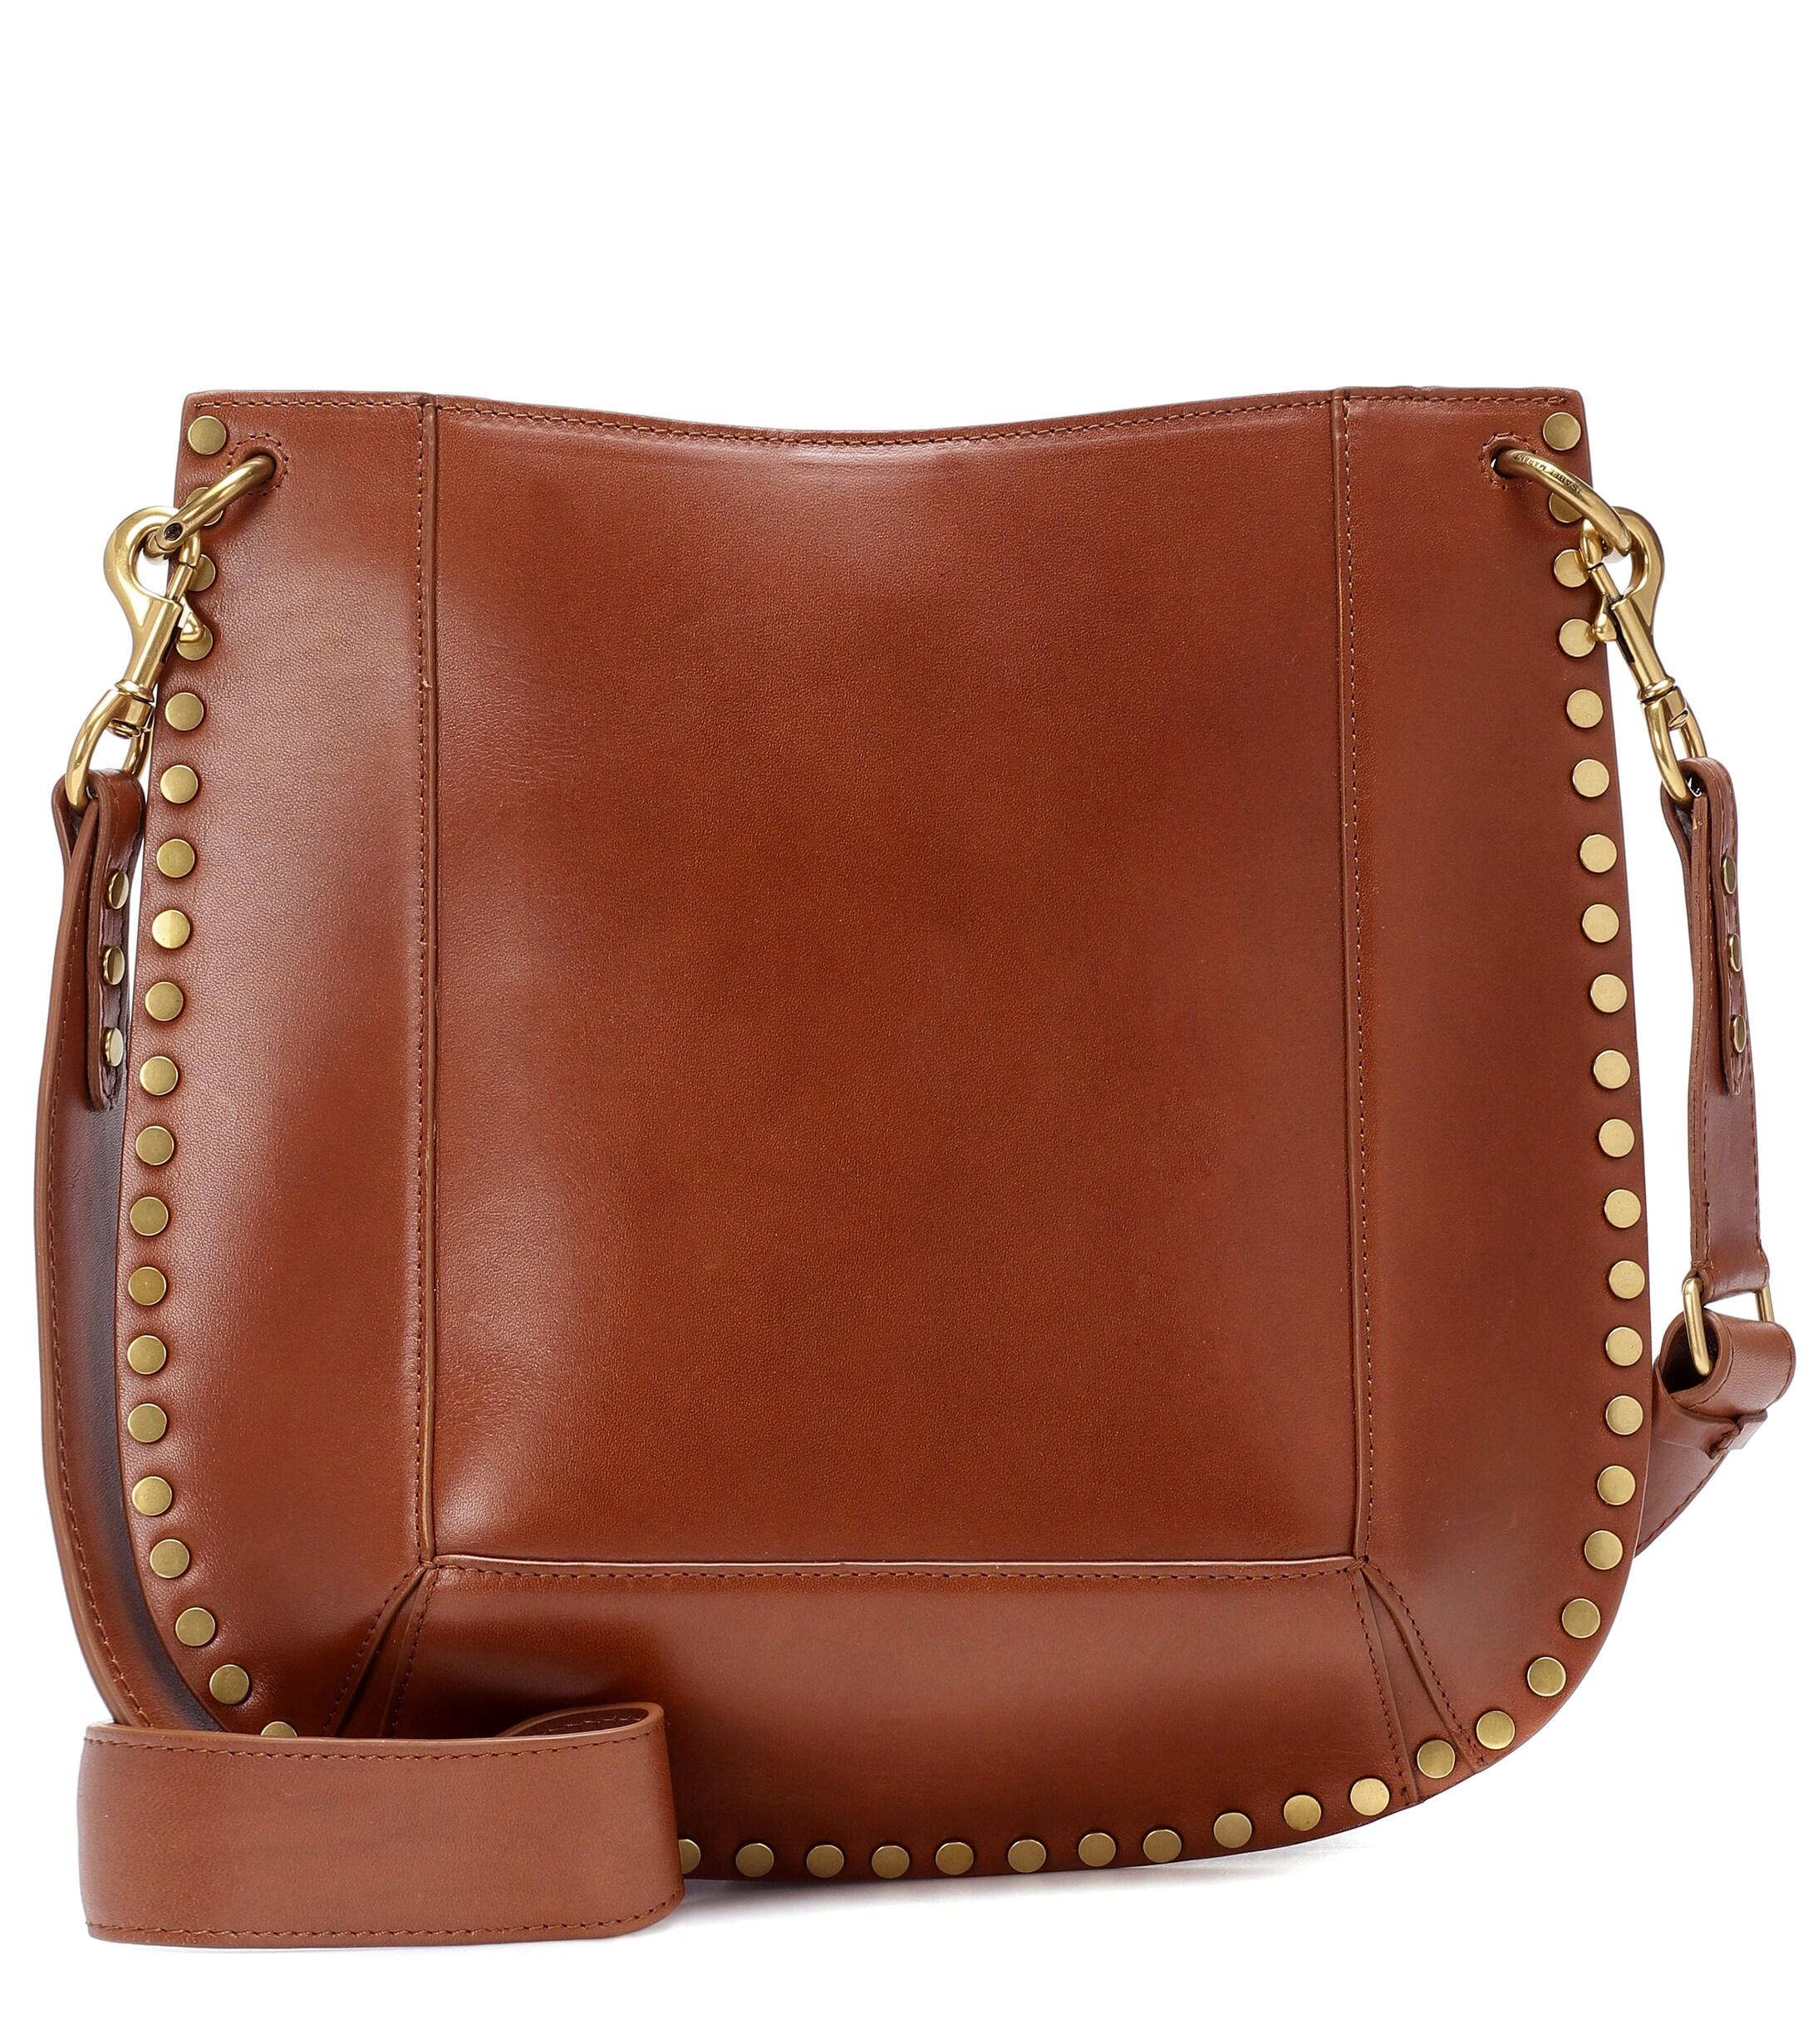 Isabel Marant Oskan Leather Shoulder Bag in Brown - Lyst